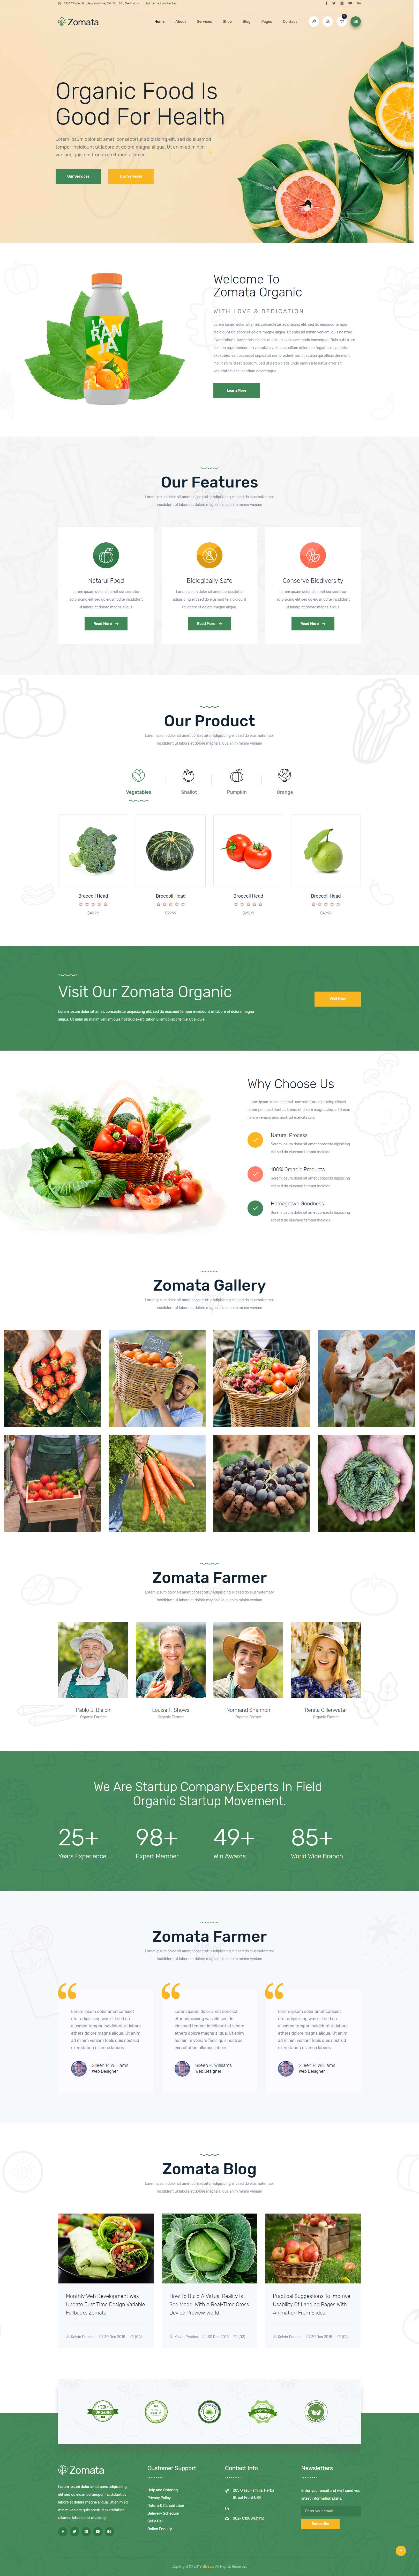 绿色欧美风格的有机蔬菜水果整站网站源码下载